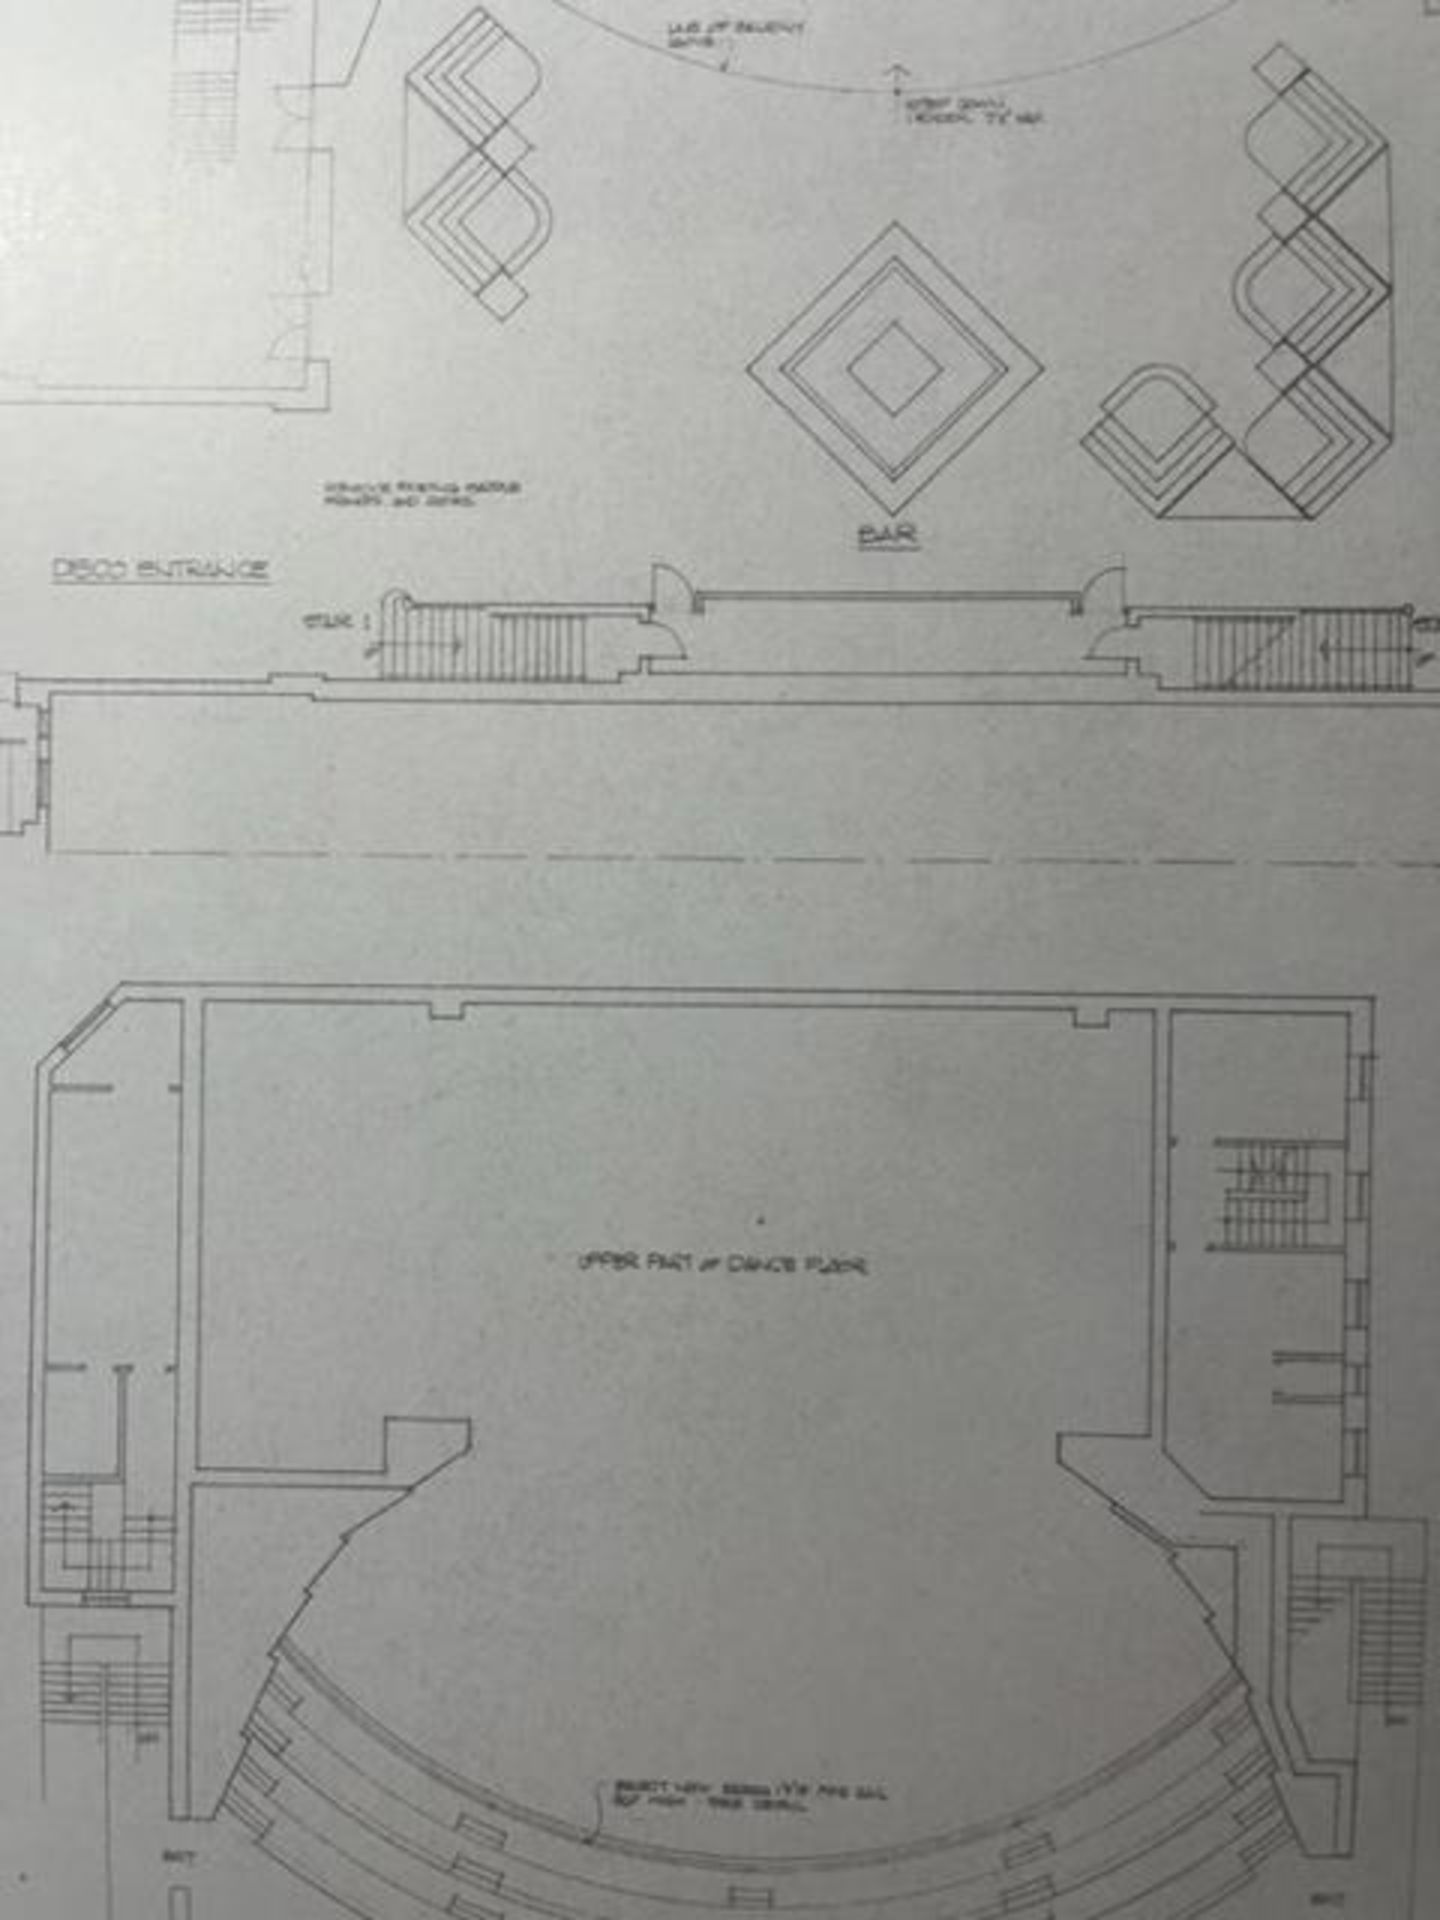 Studio 54 "Floor Plans" Print. - Image 5 of 6